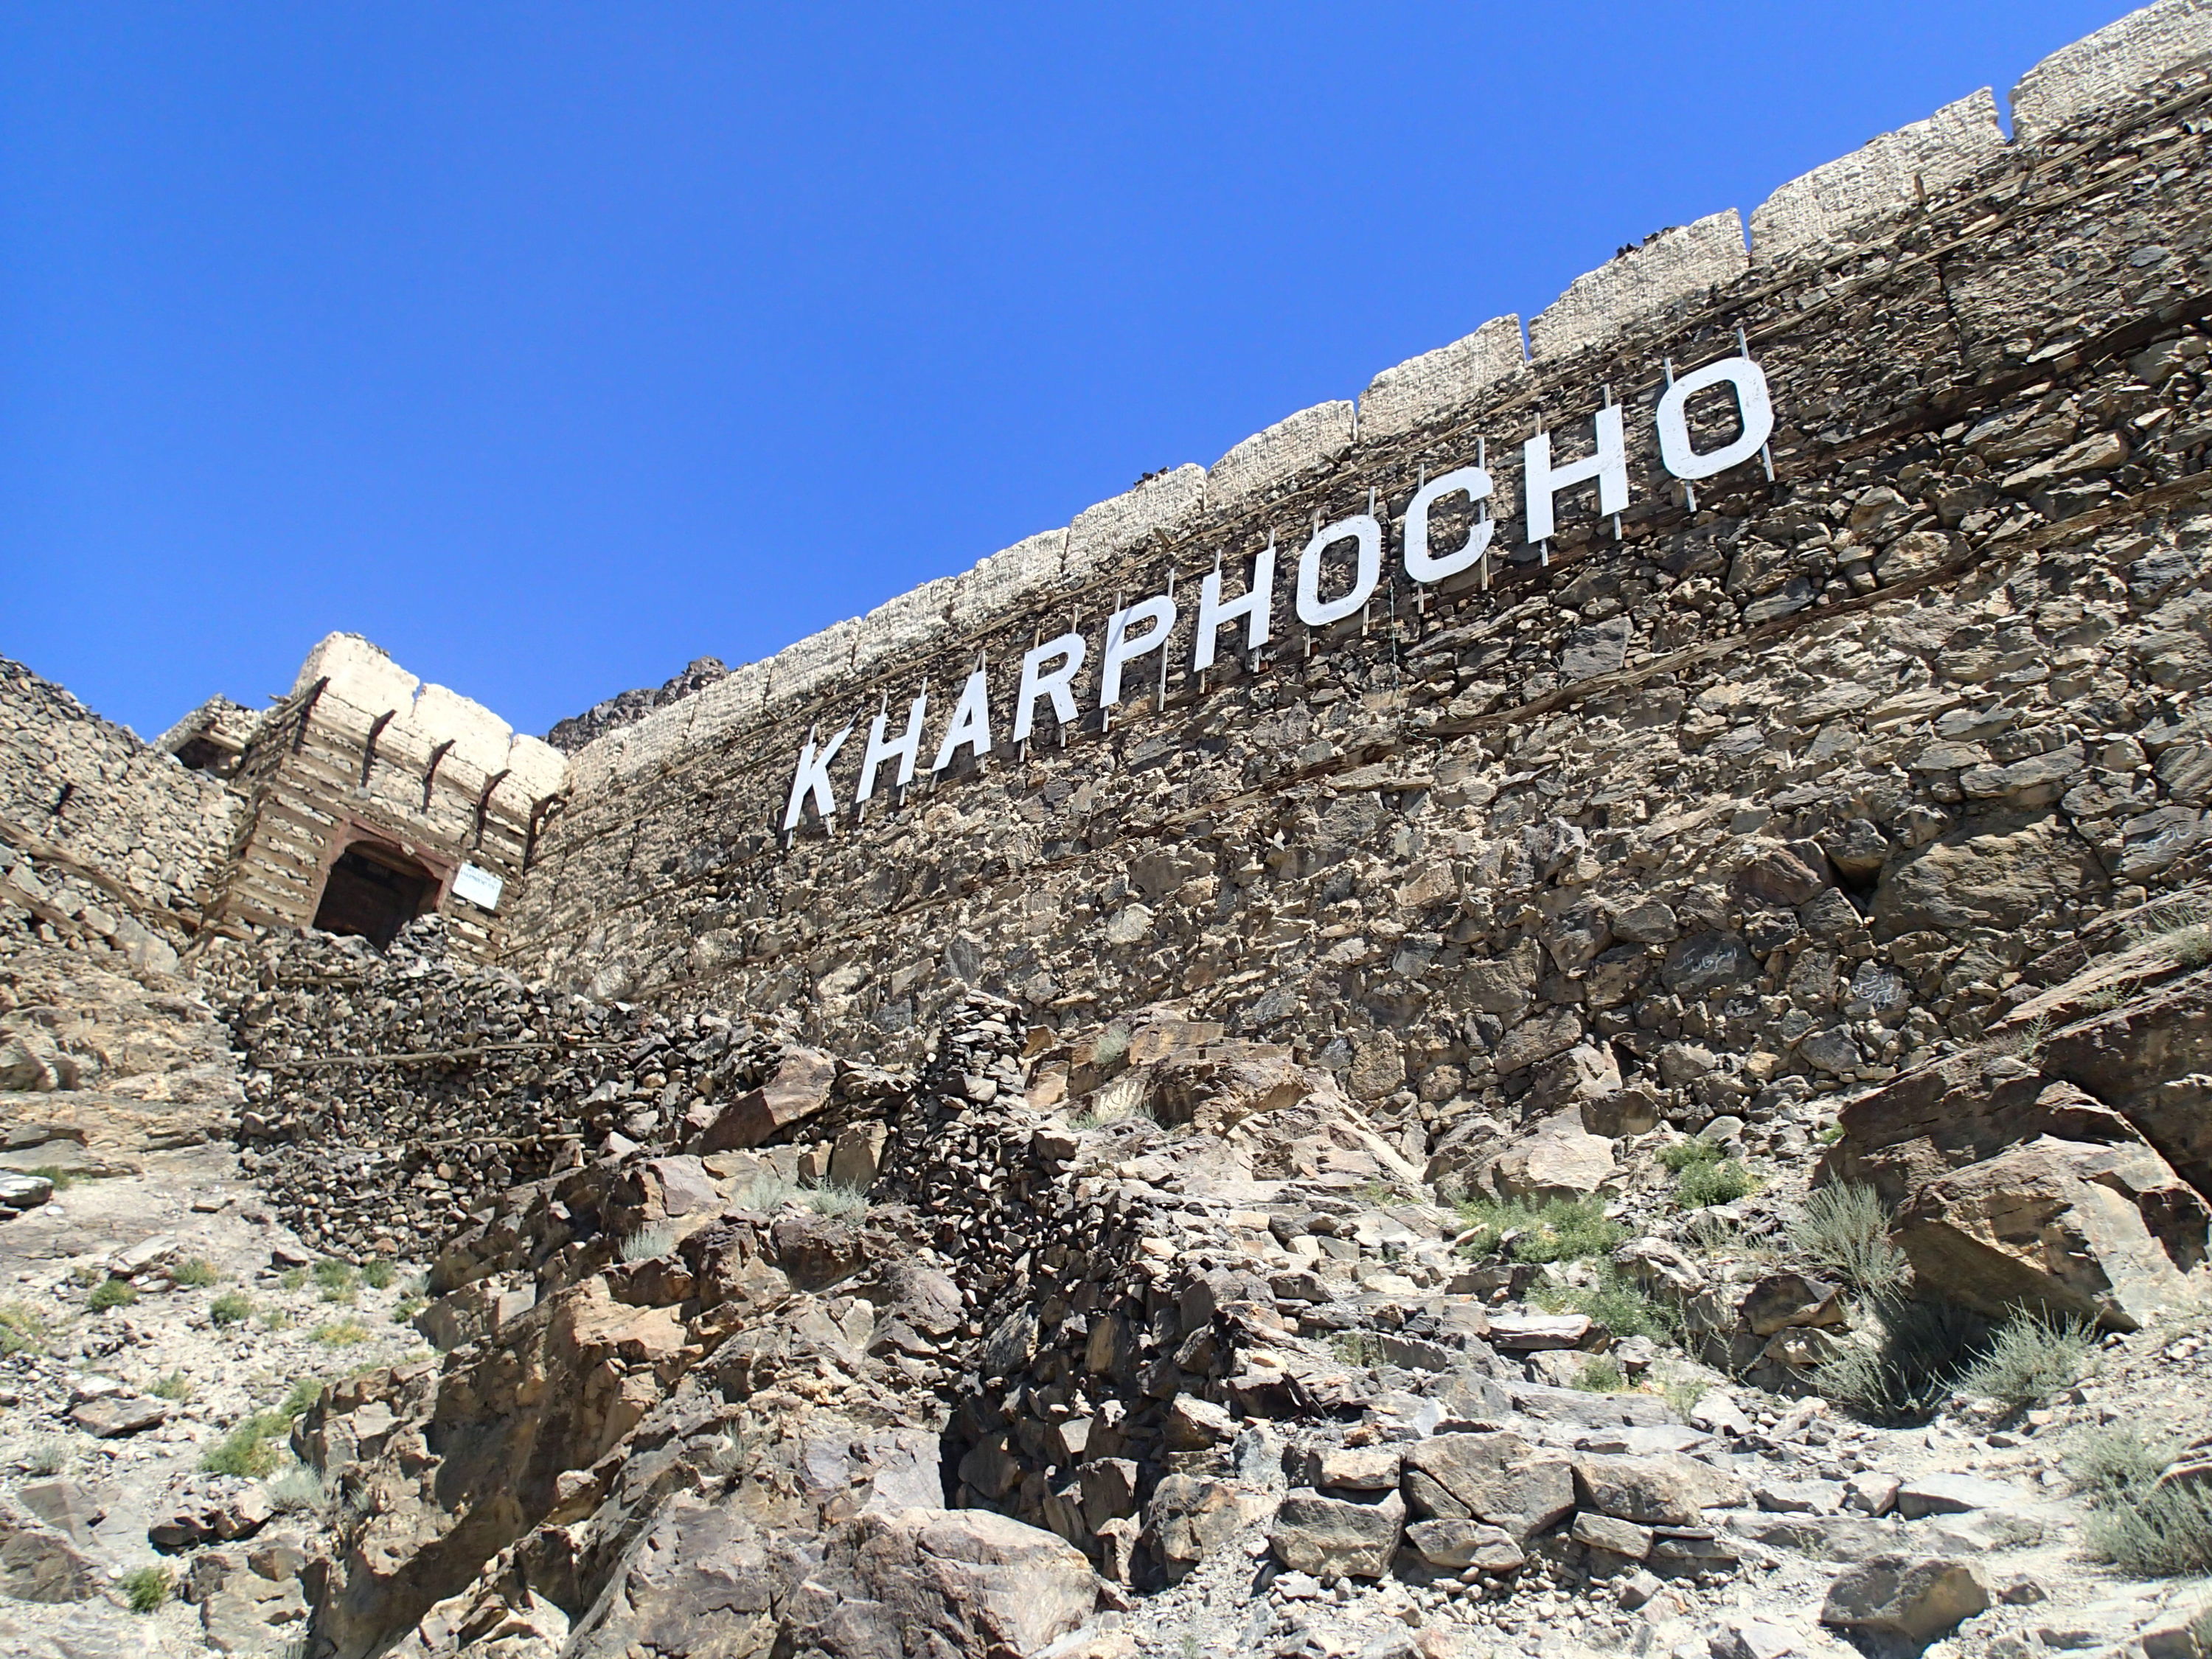 Kharphocho